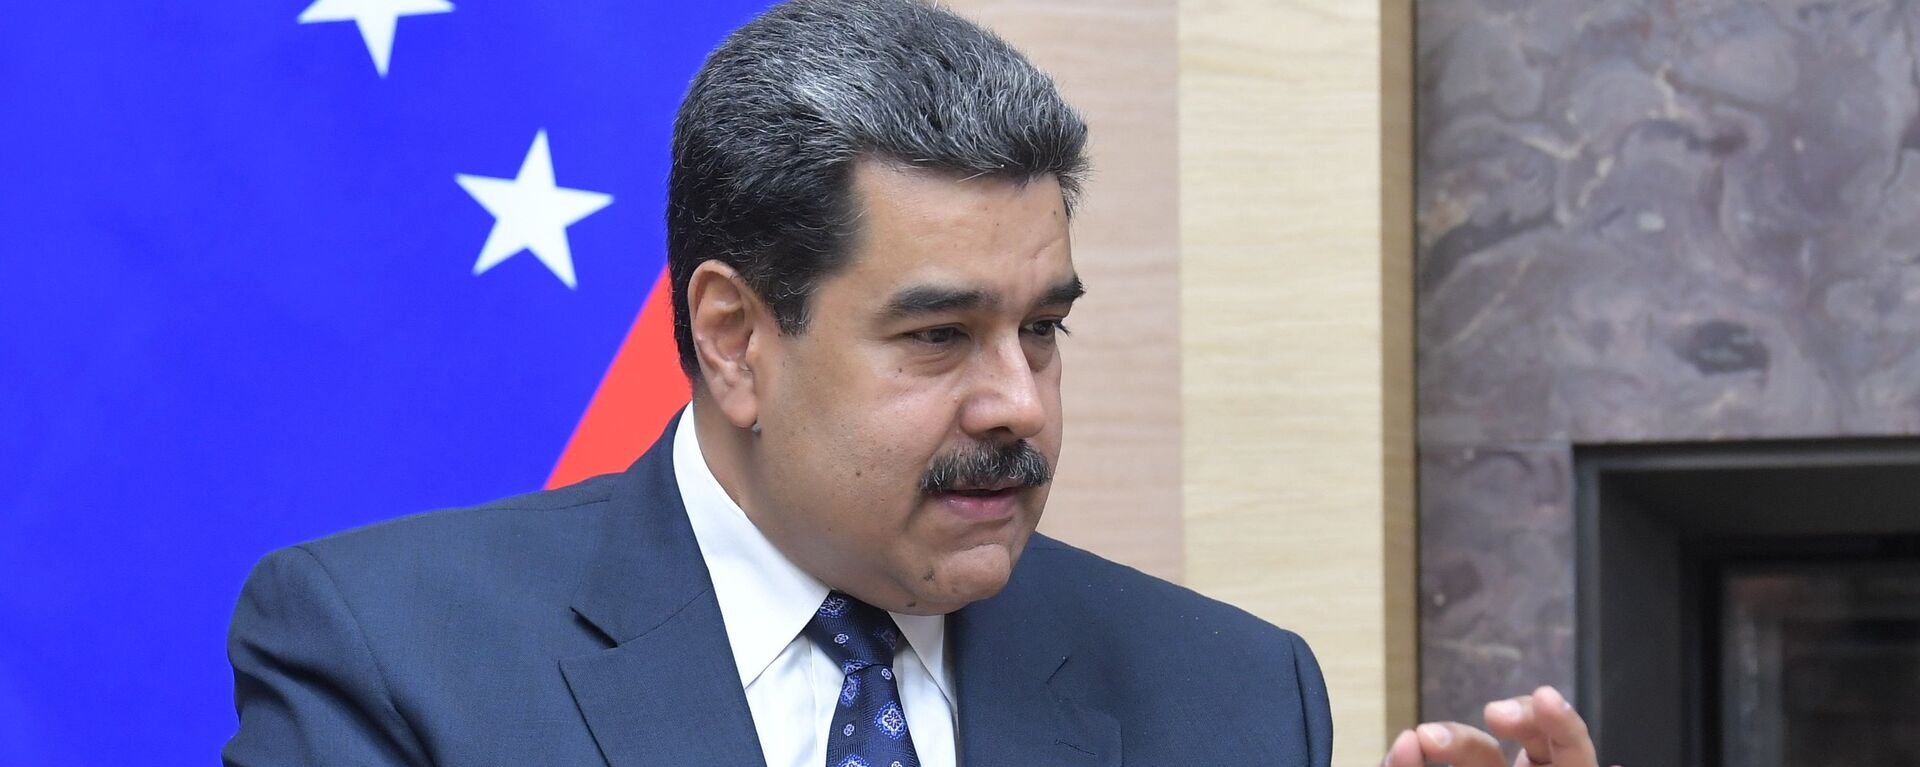 Nicolás Maduro, presidente de Venezuela - Sputnik Mundo, 1920, 29.04.2022